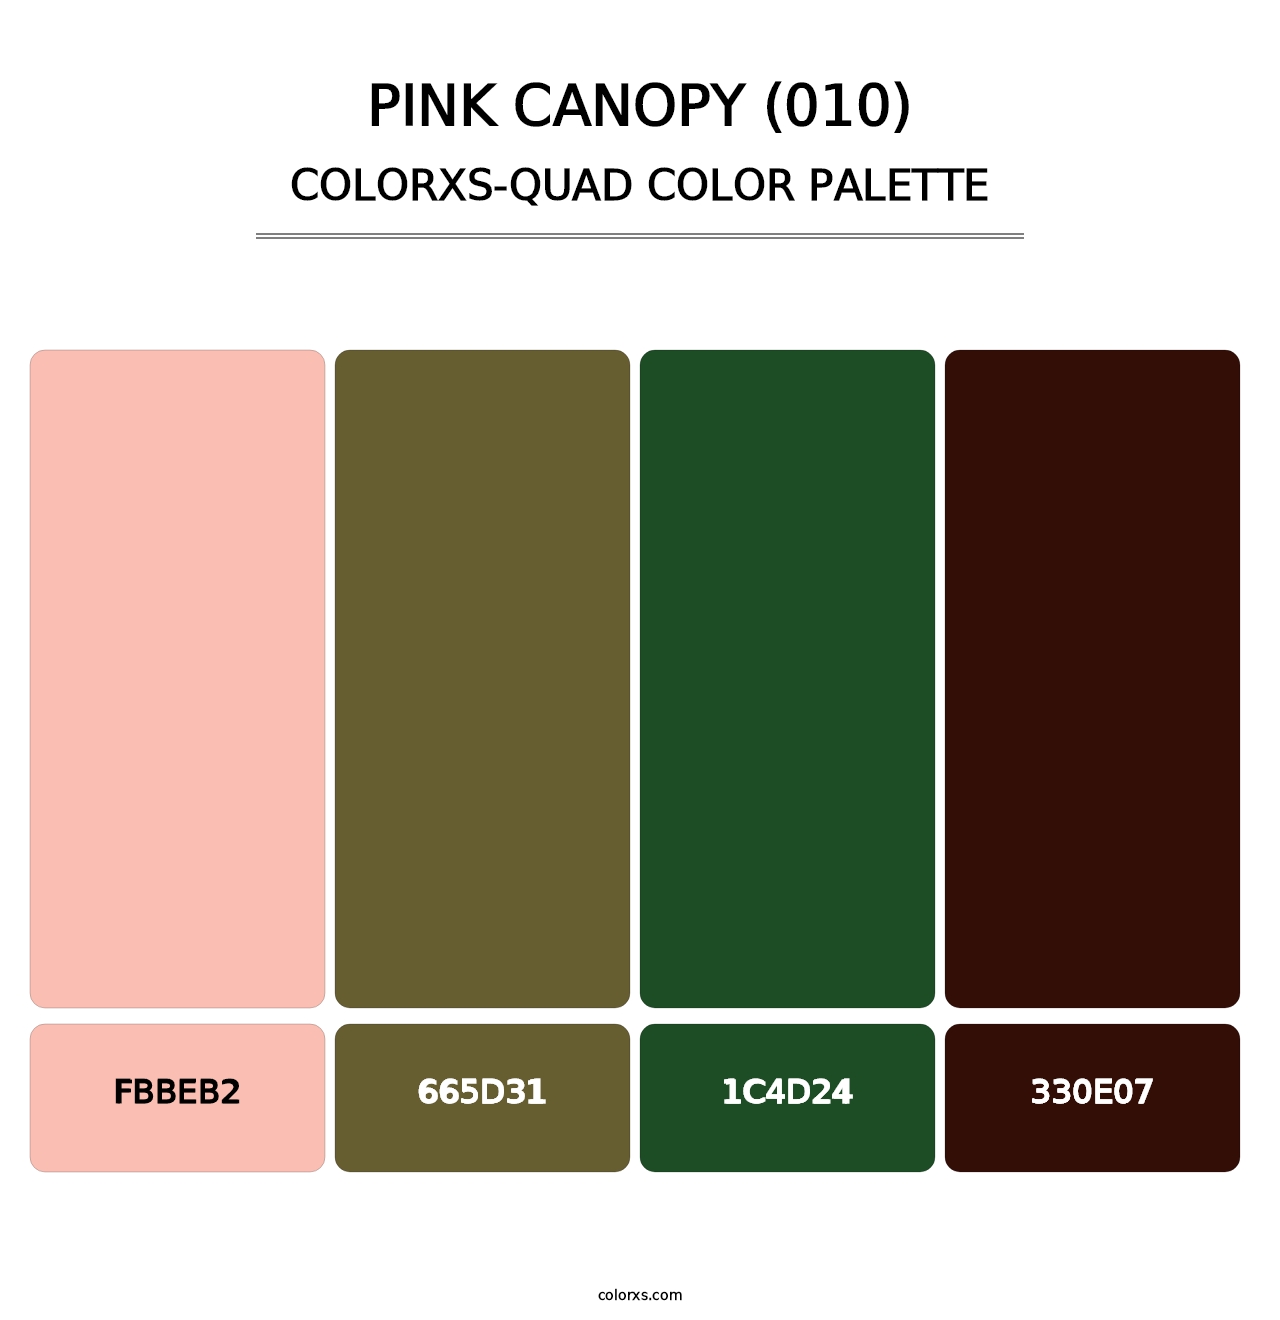 Pink Canopy (010) - Colorxs Quad Palette